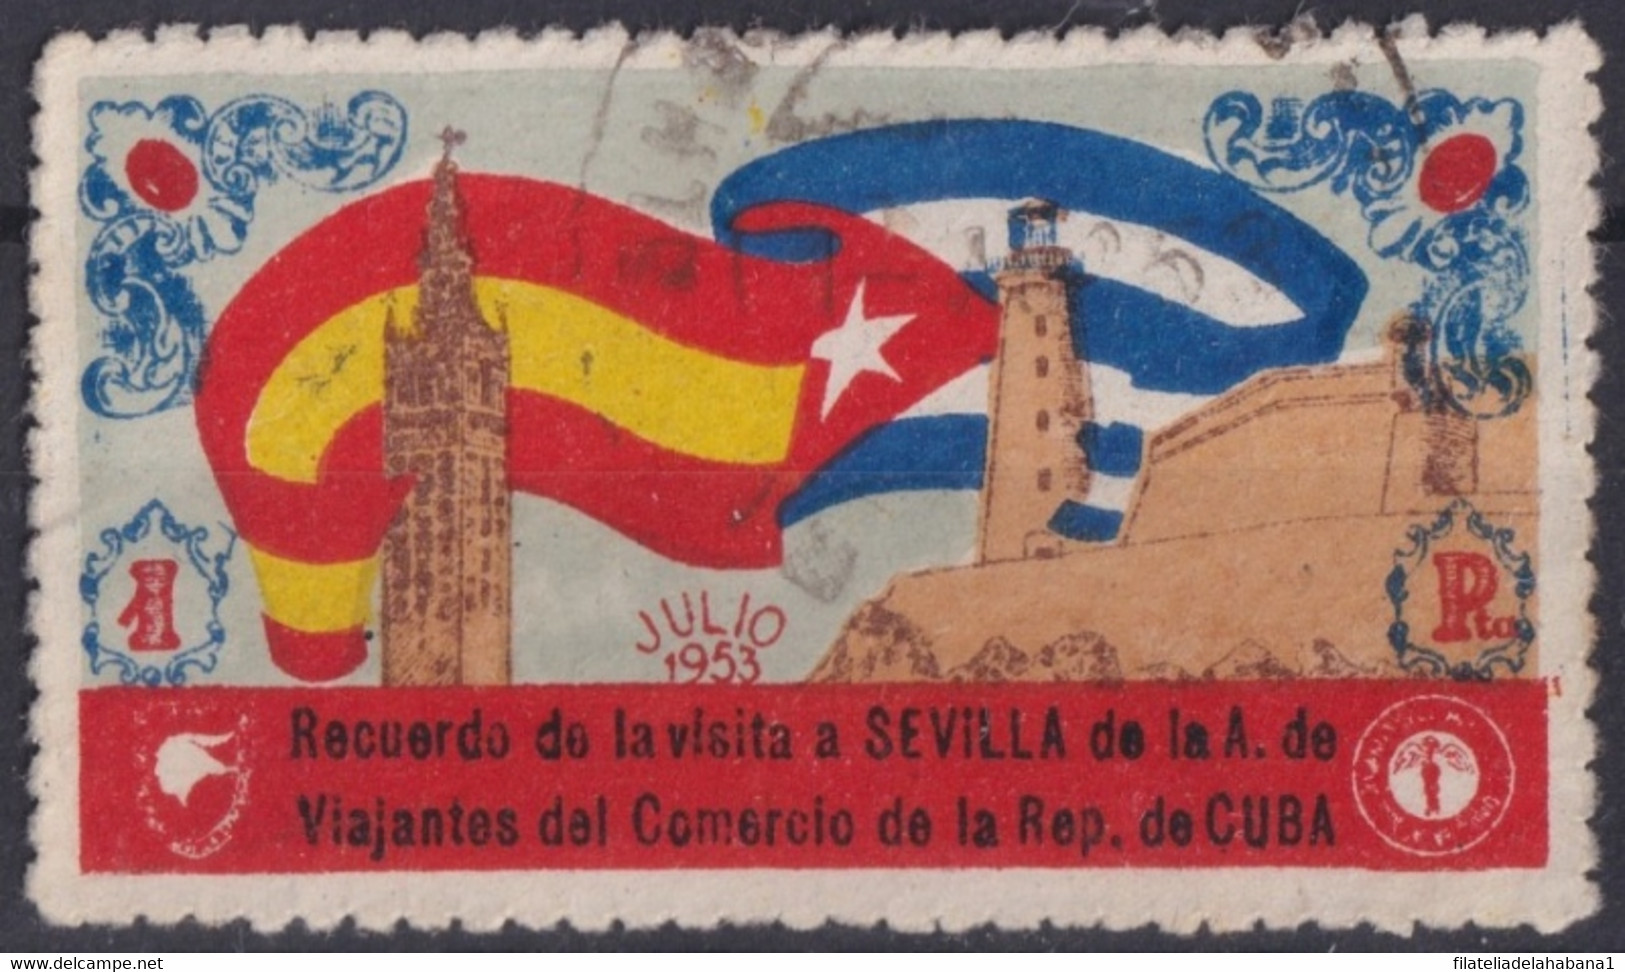 VI-517 CUBA REPUBLICA 1953 CINDERELLA VIAJANTES DEL COMERCIO VISTAN SEVILLA MORRO CASTLE. - Automatenmarken (Frama)